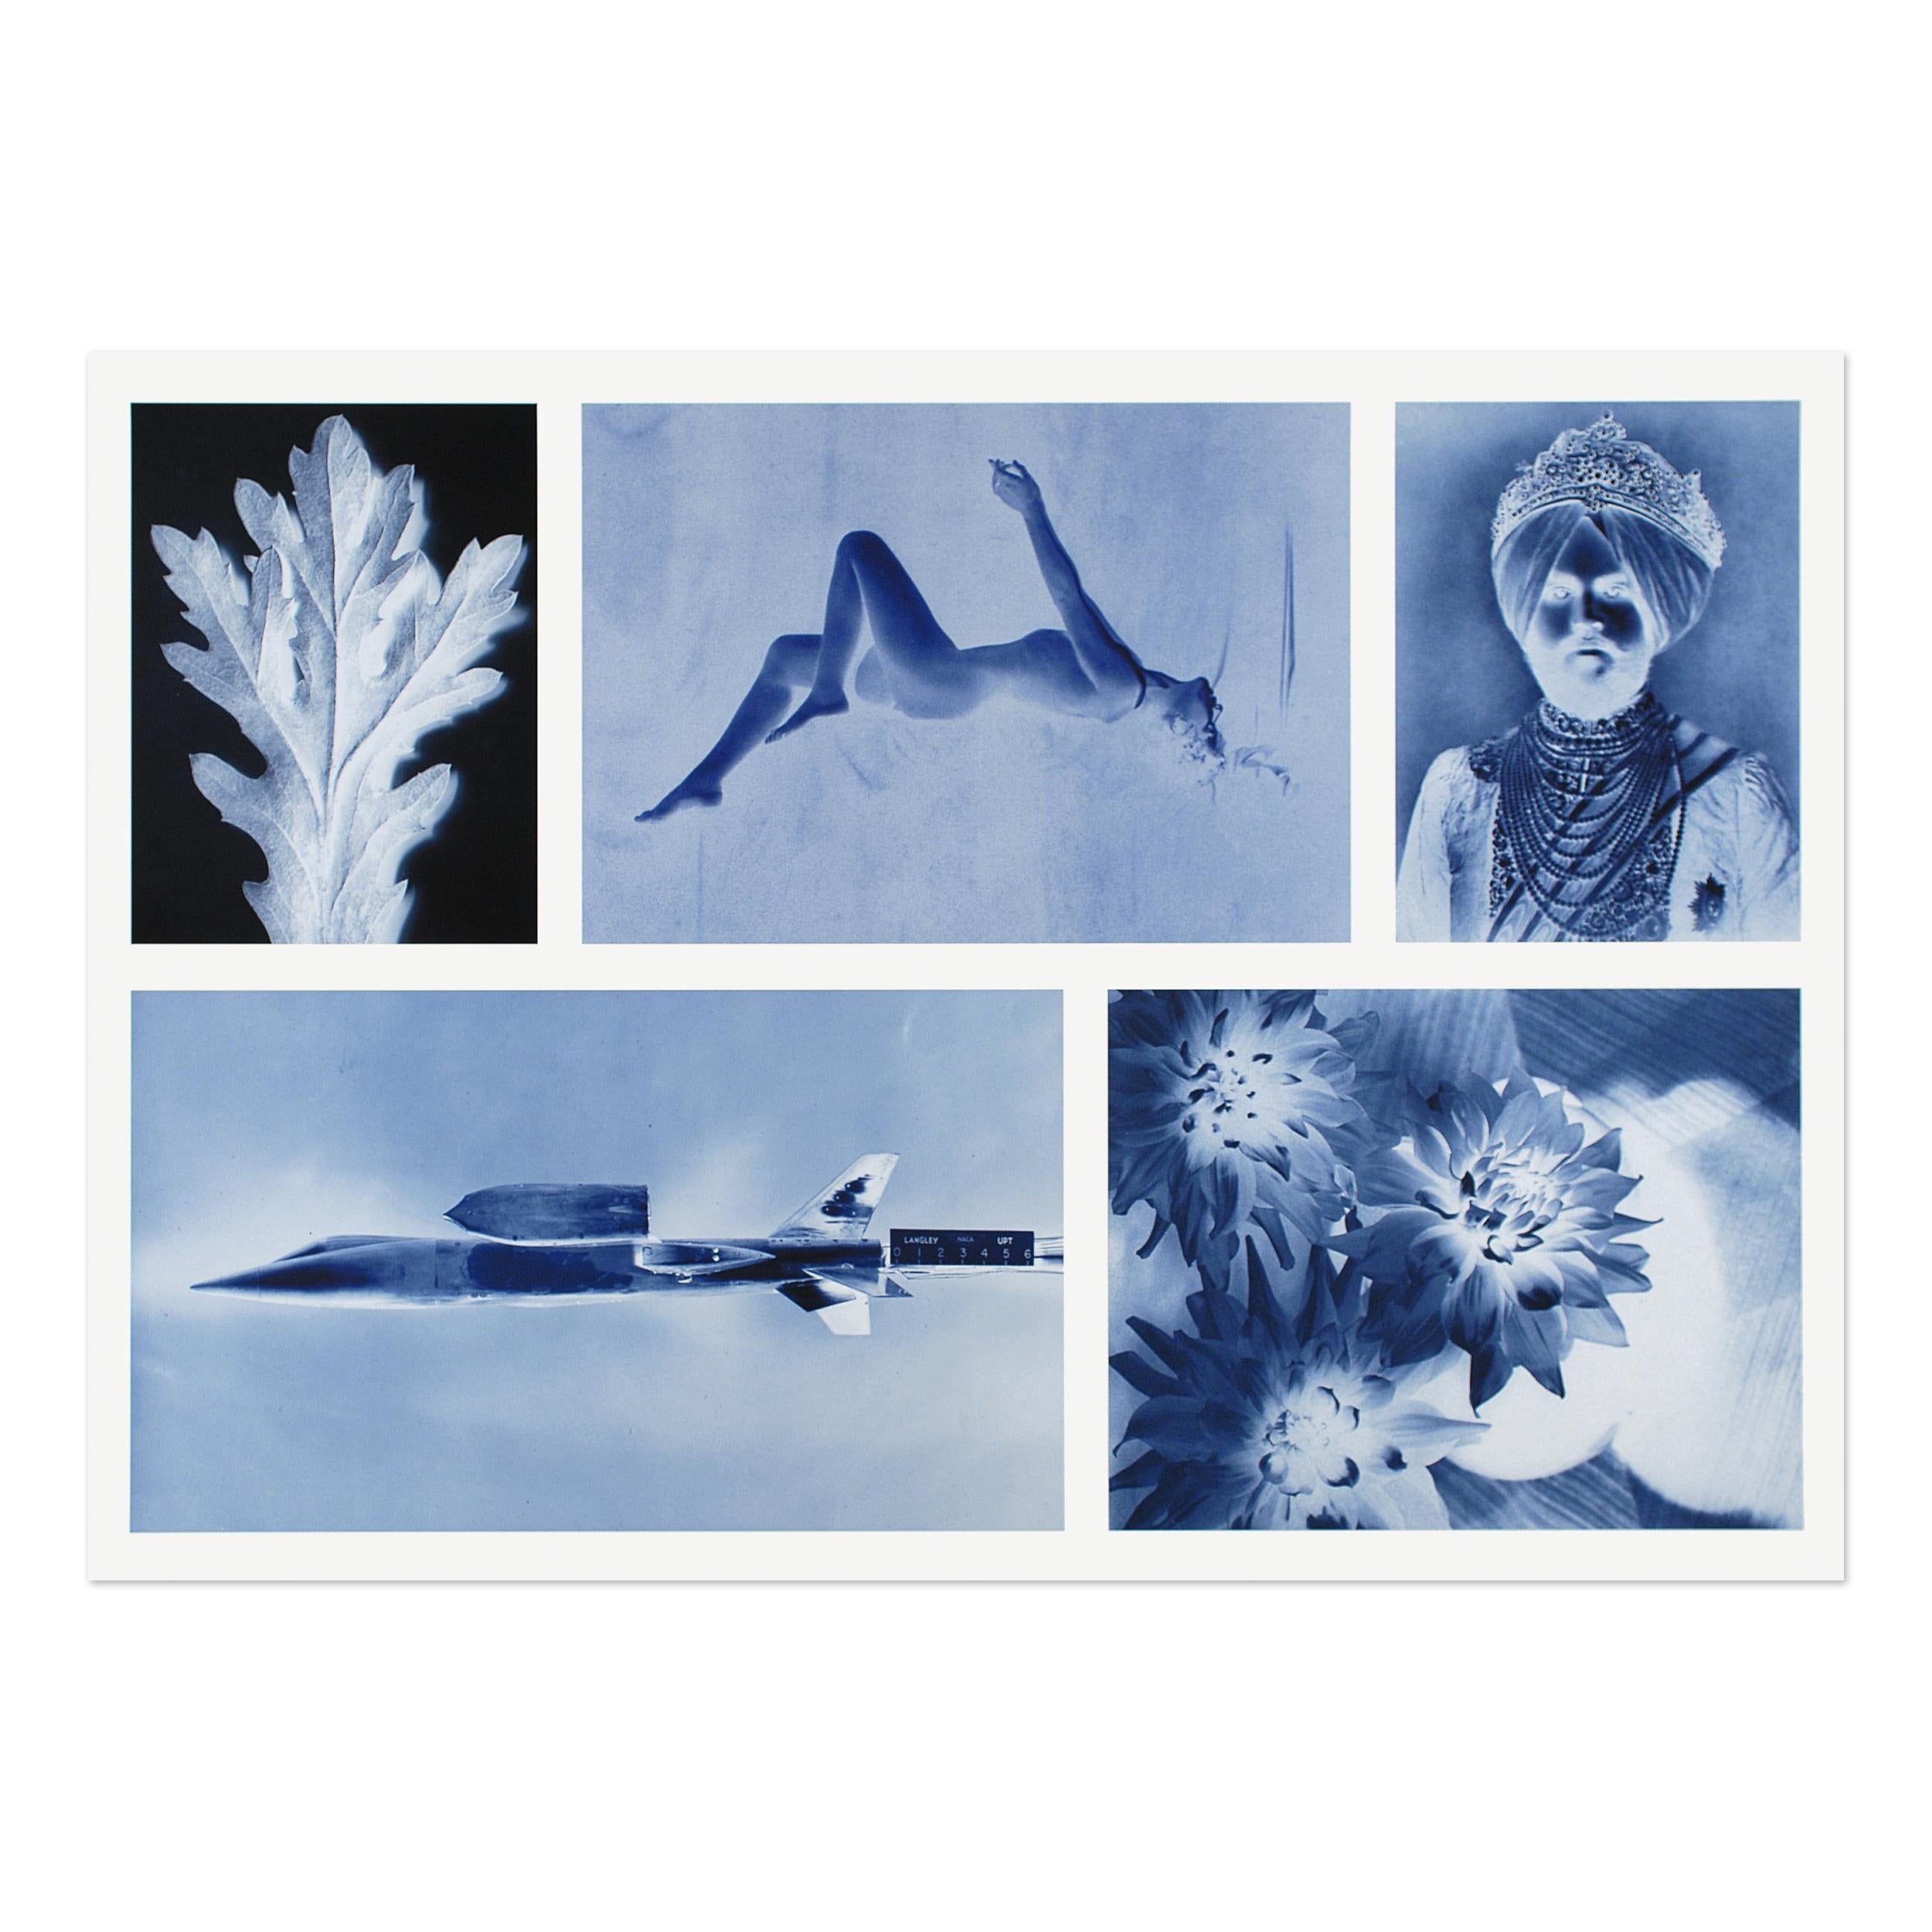 Thomas Ruff (allemand, né en 1958)
Négatifs II, 2016
Support : Impression pigmentaire numérique, sur papier chiffon
Dimensions : 70 x 100 cm (25,5 x 39,5 pouces) : 70 x 100 cm (25.5 x 39.5 in)
Édition de 40 exemplaires : signés et numérotés à la